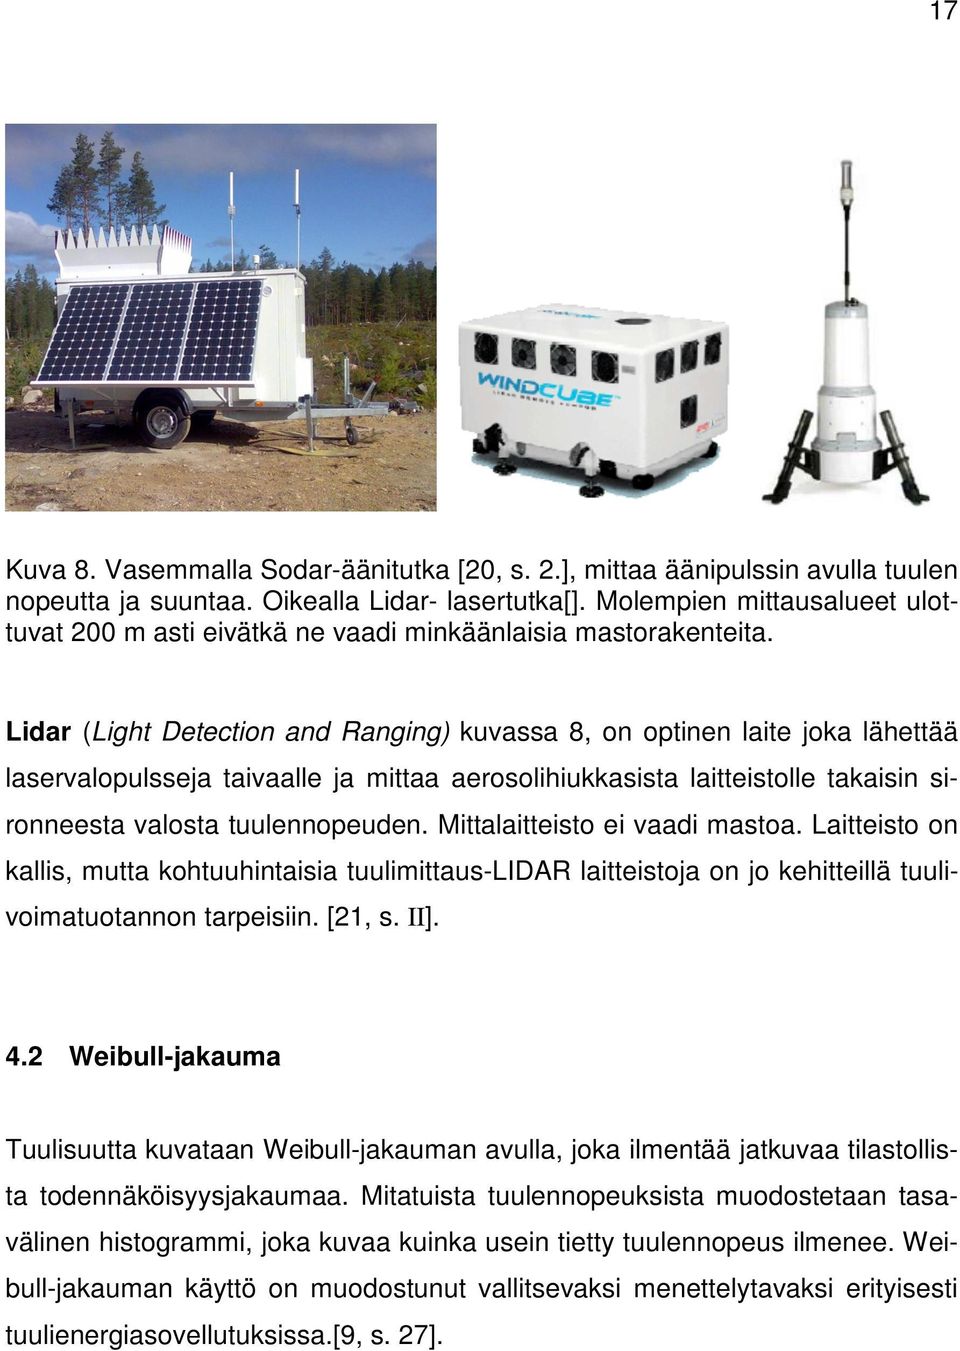 Lidar (Light Detection and Ranging) kuvassa 8, on optinen laite joka lähettää laservalopulsseja taivaalle ja mittaa aerosolihiukkasista laitteistolle takaisin sironneesta valosta tuulennopeuden.